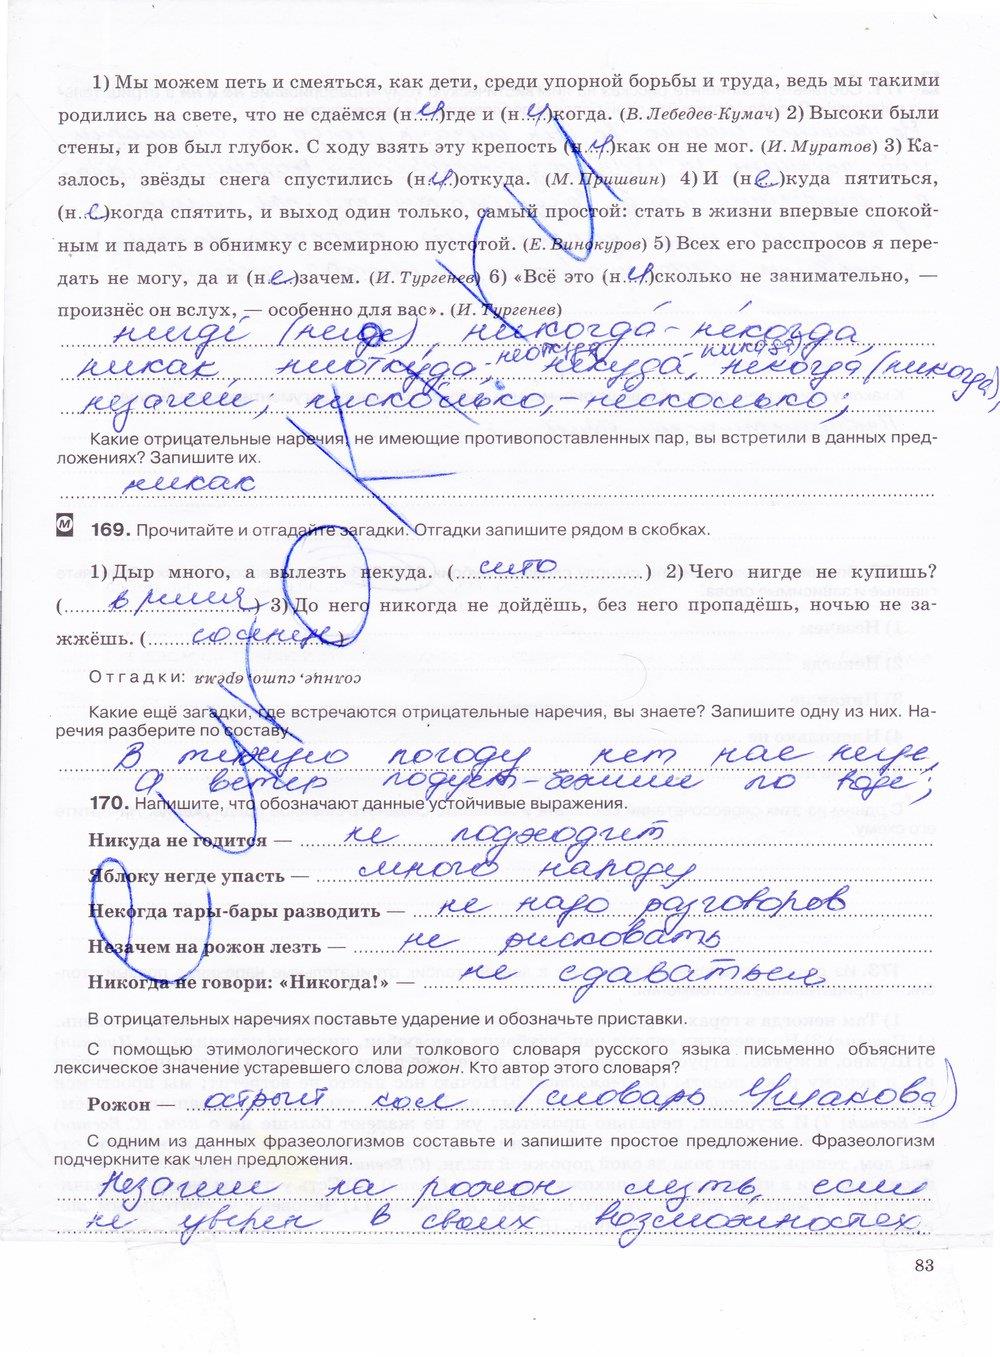 гдз 7 класс рабочая тетрадь страница 83 русский язык Ларионова